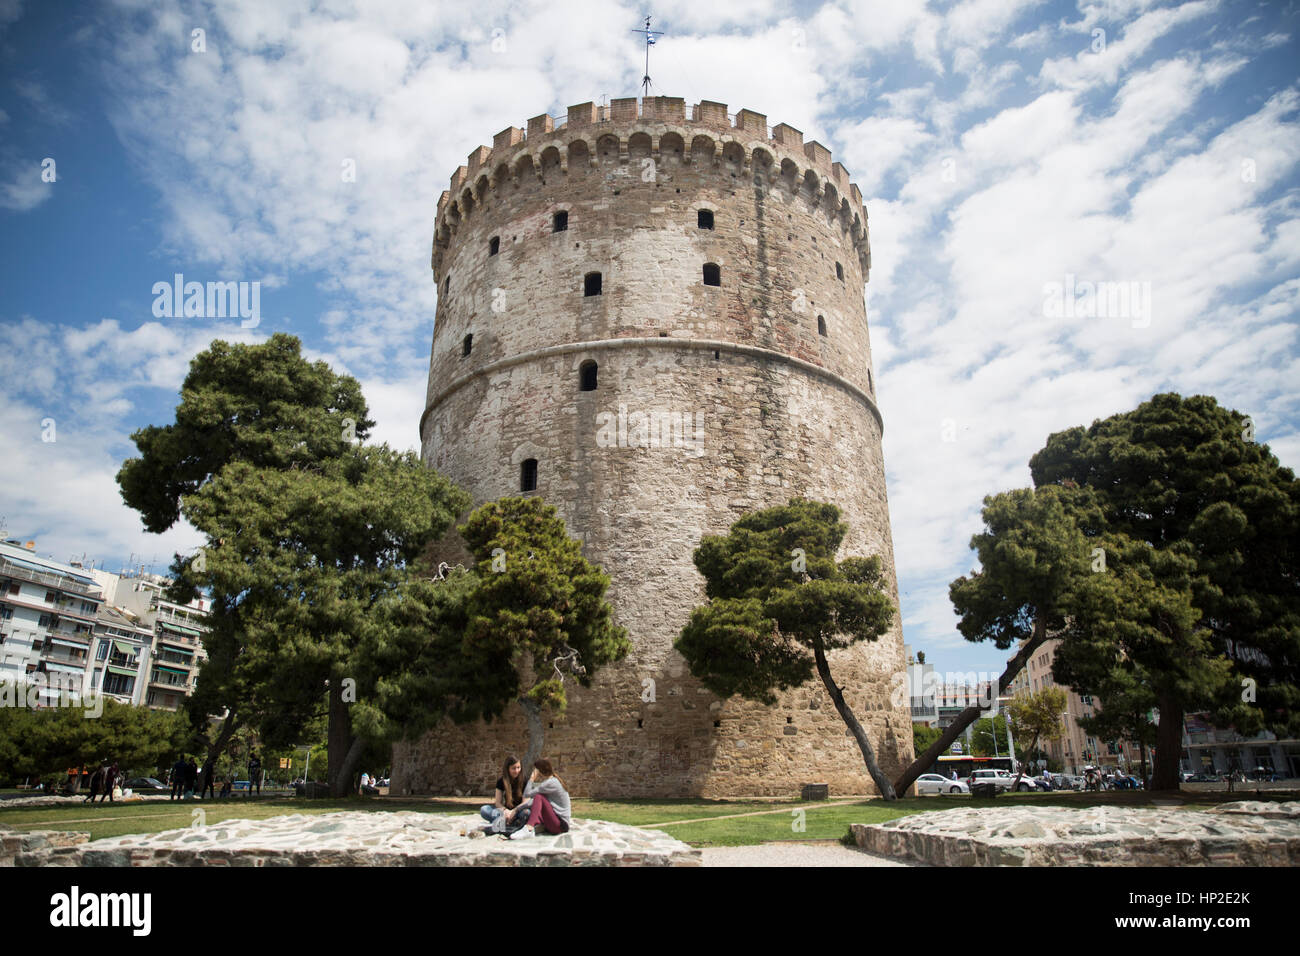 Salonicco, Grecia - 17 Maggio 2016: La Torre Bianca di Salonicco è un monumento e museo sul lungomare della città di Salonicco Foto Stock